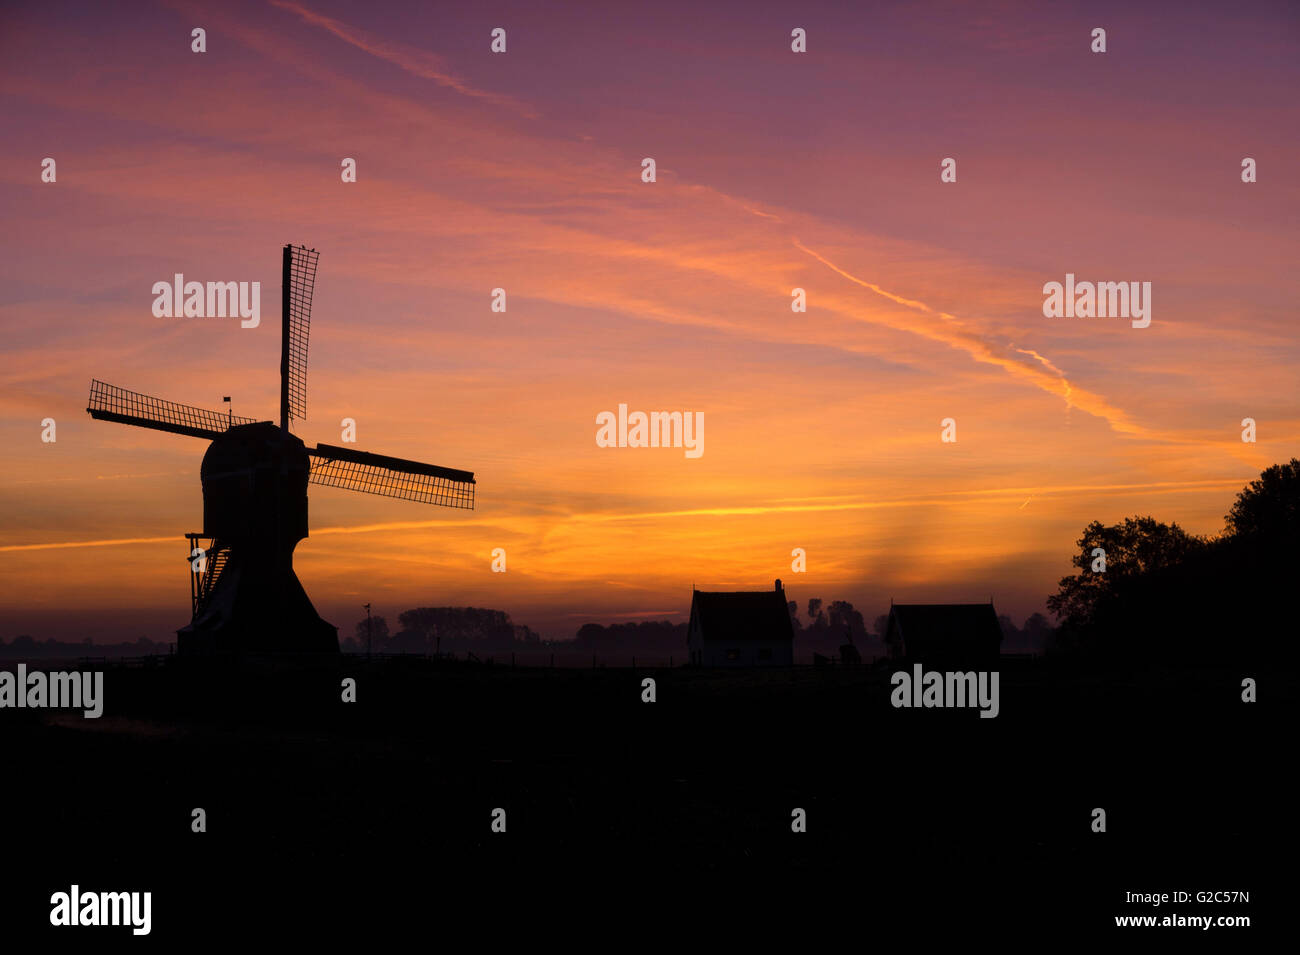 El molino de viento "Laaglandse molen" delante de un espectacular amanecer Foto de stock